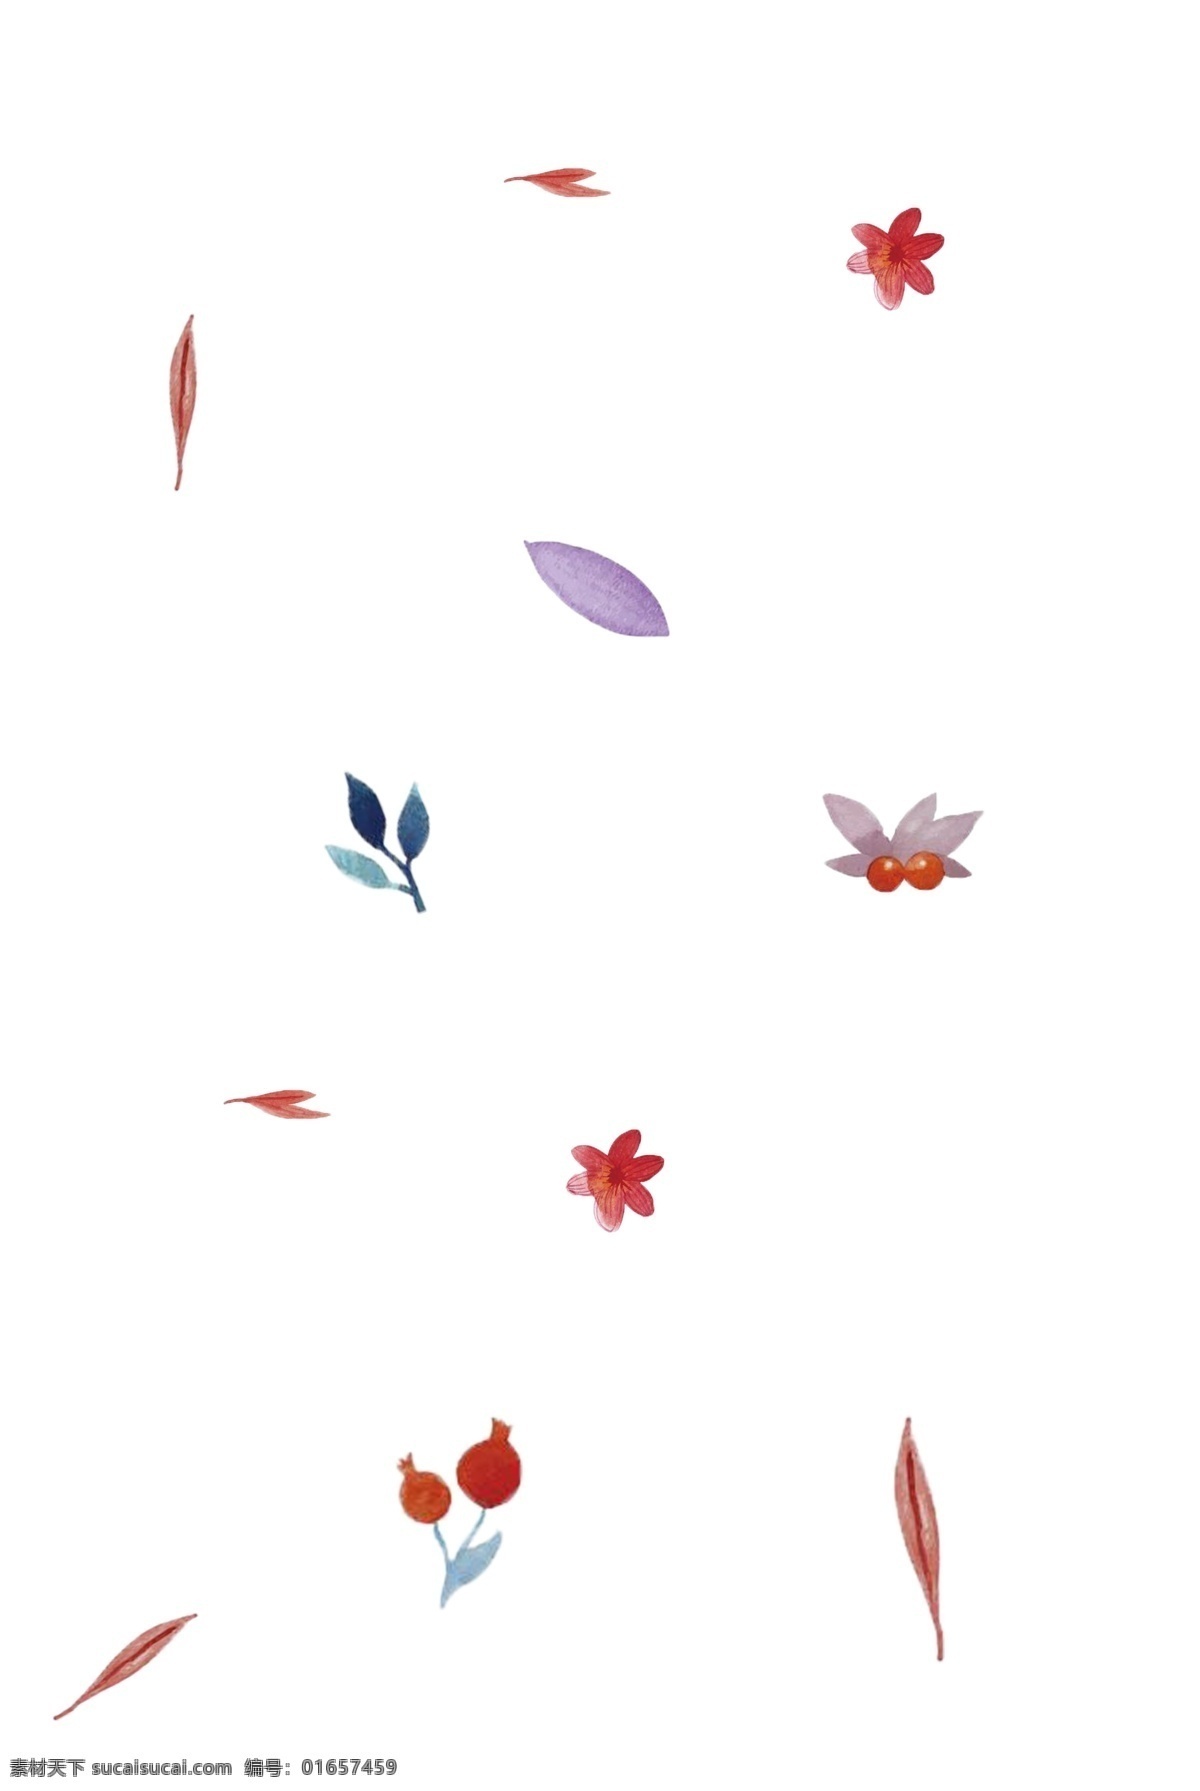 手绘 唯美 漂浮 装饰 手绘png 花朵 树叶 可爱 简约 生动 用于 学习交流 海报制作 装饰等